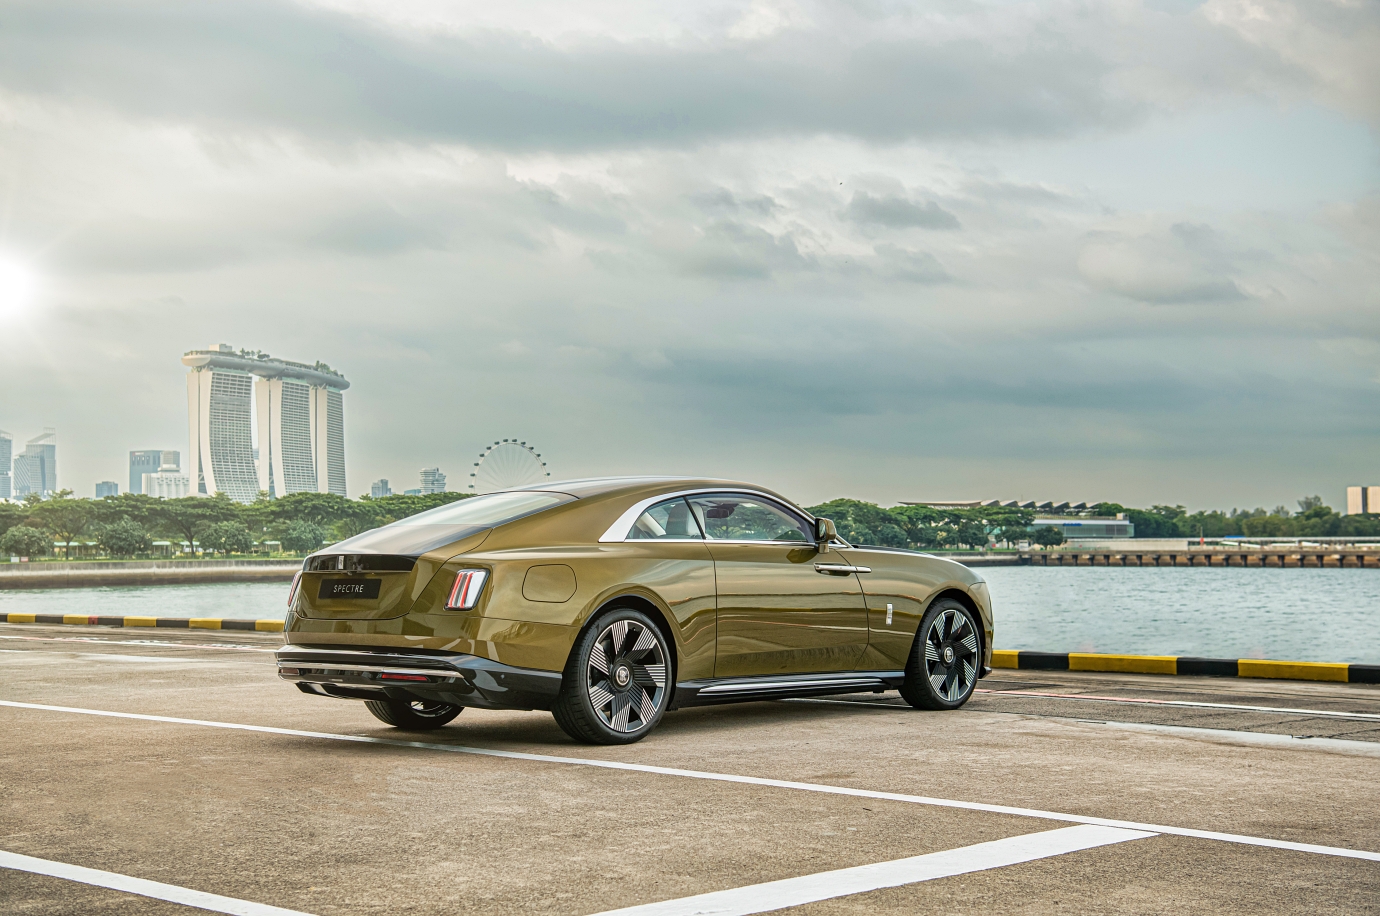 Xe điện Rolls-Royce Spectre ra mắt tại Singapore, giá quy đổi hơn 37 tỷ VNĐ rolls-royce-spectre-autodaily-4.jpg